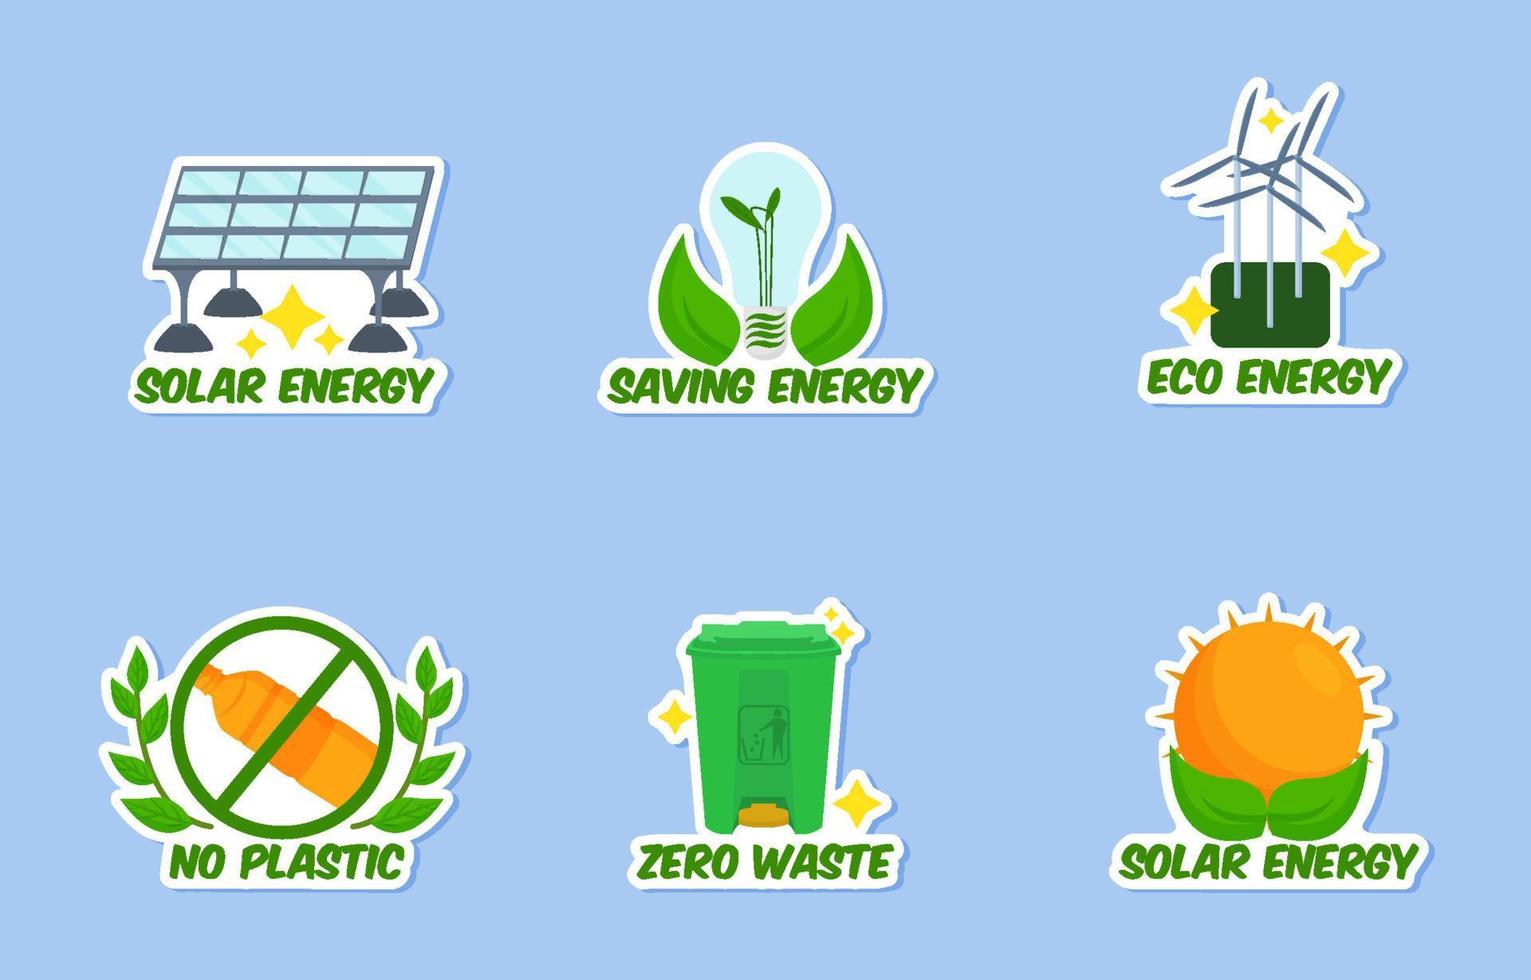 Green Technology Sticker vector